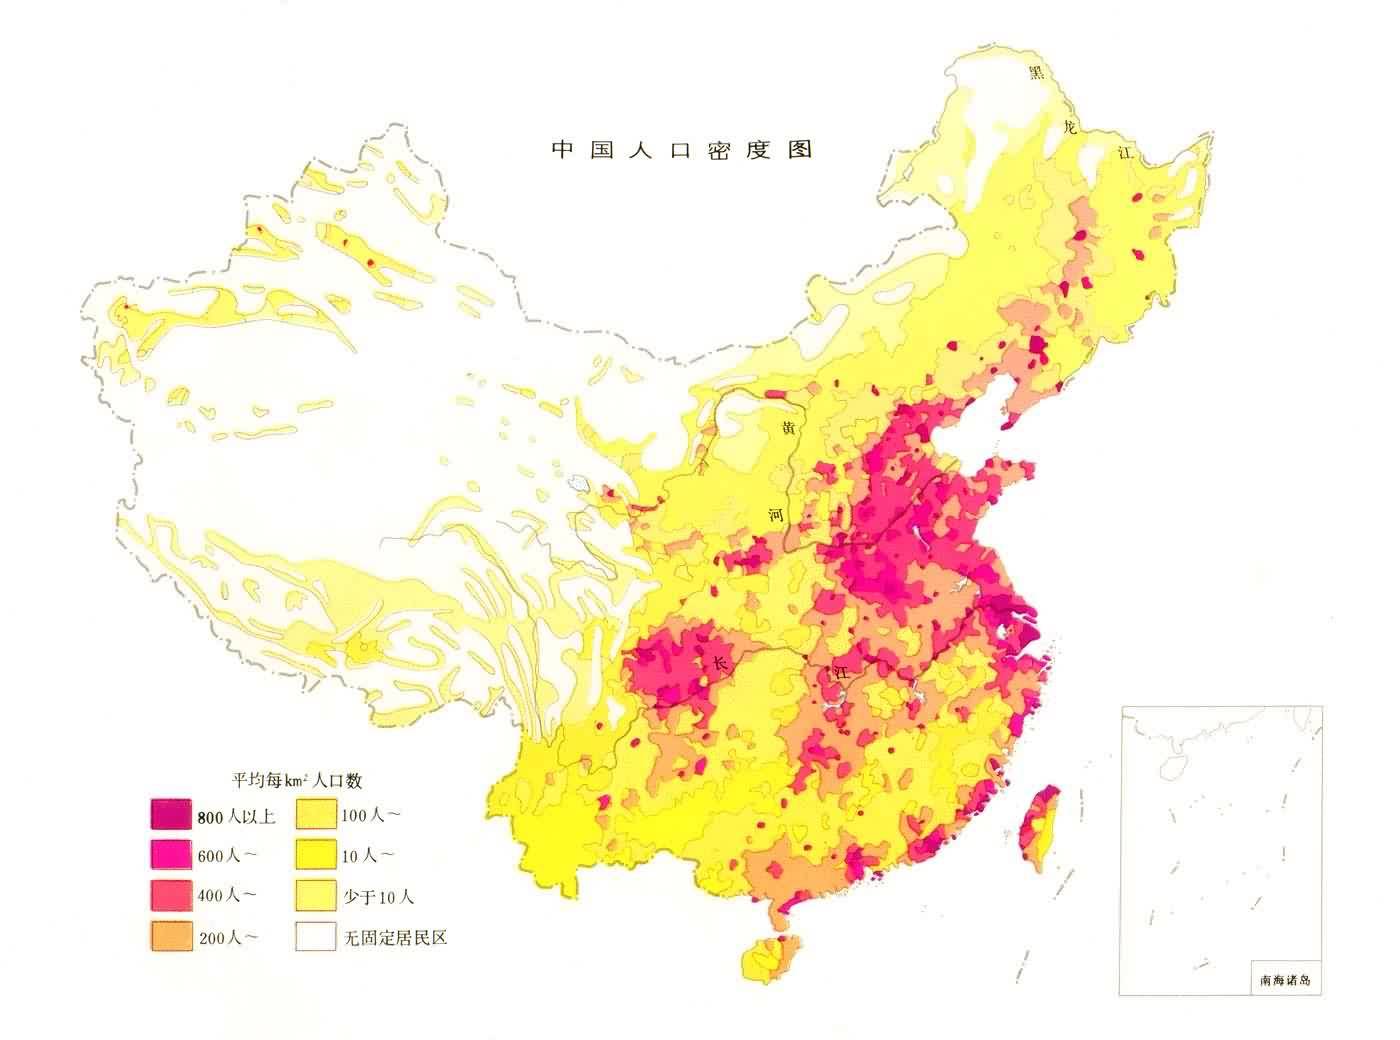 中国人口_美称中国人口比官方数据少9000万 专家 胡说